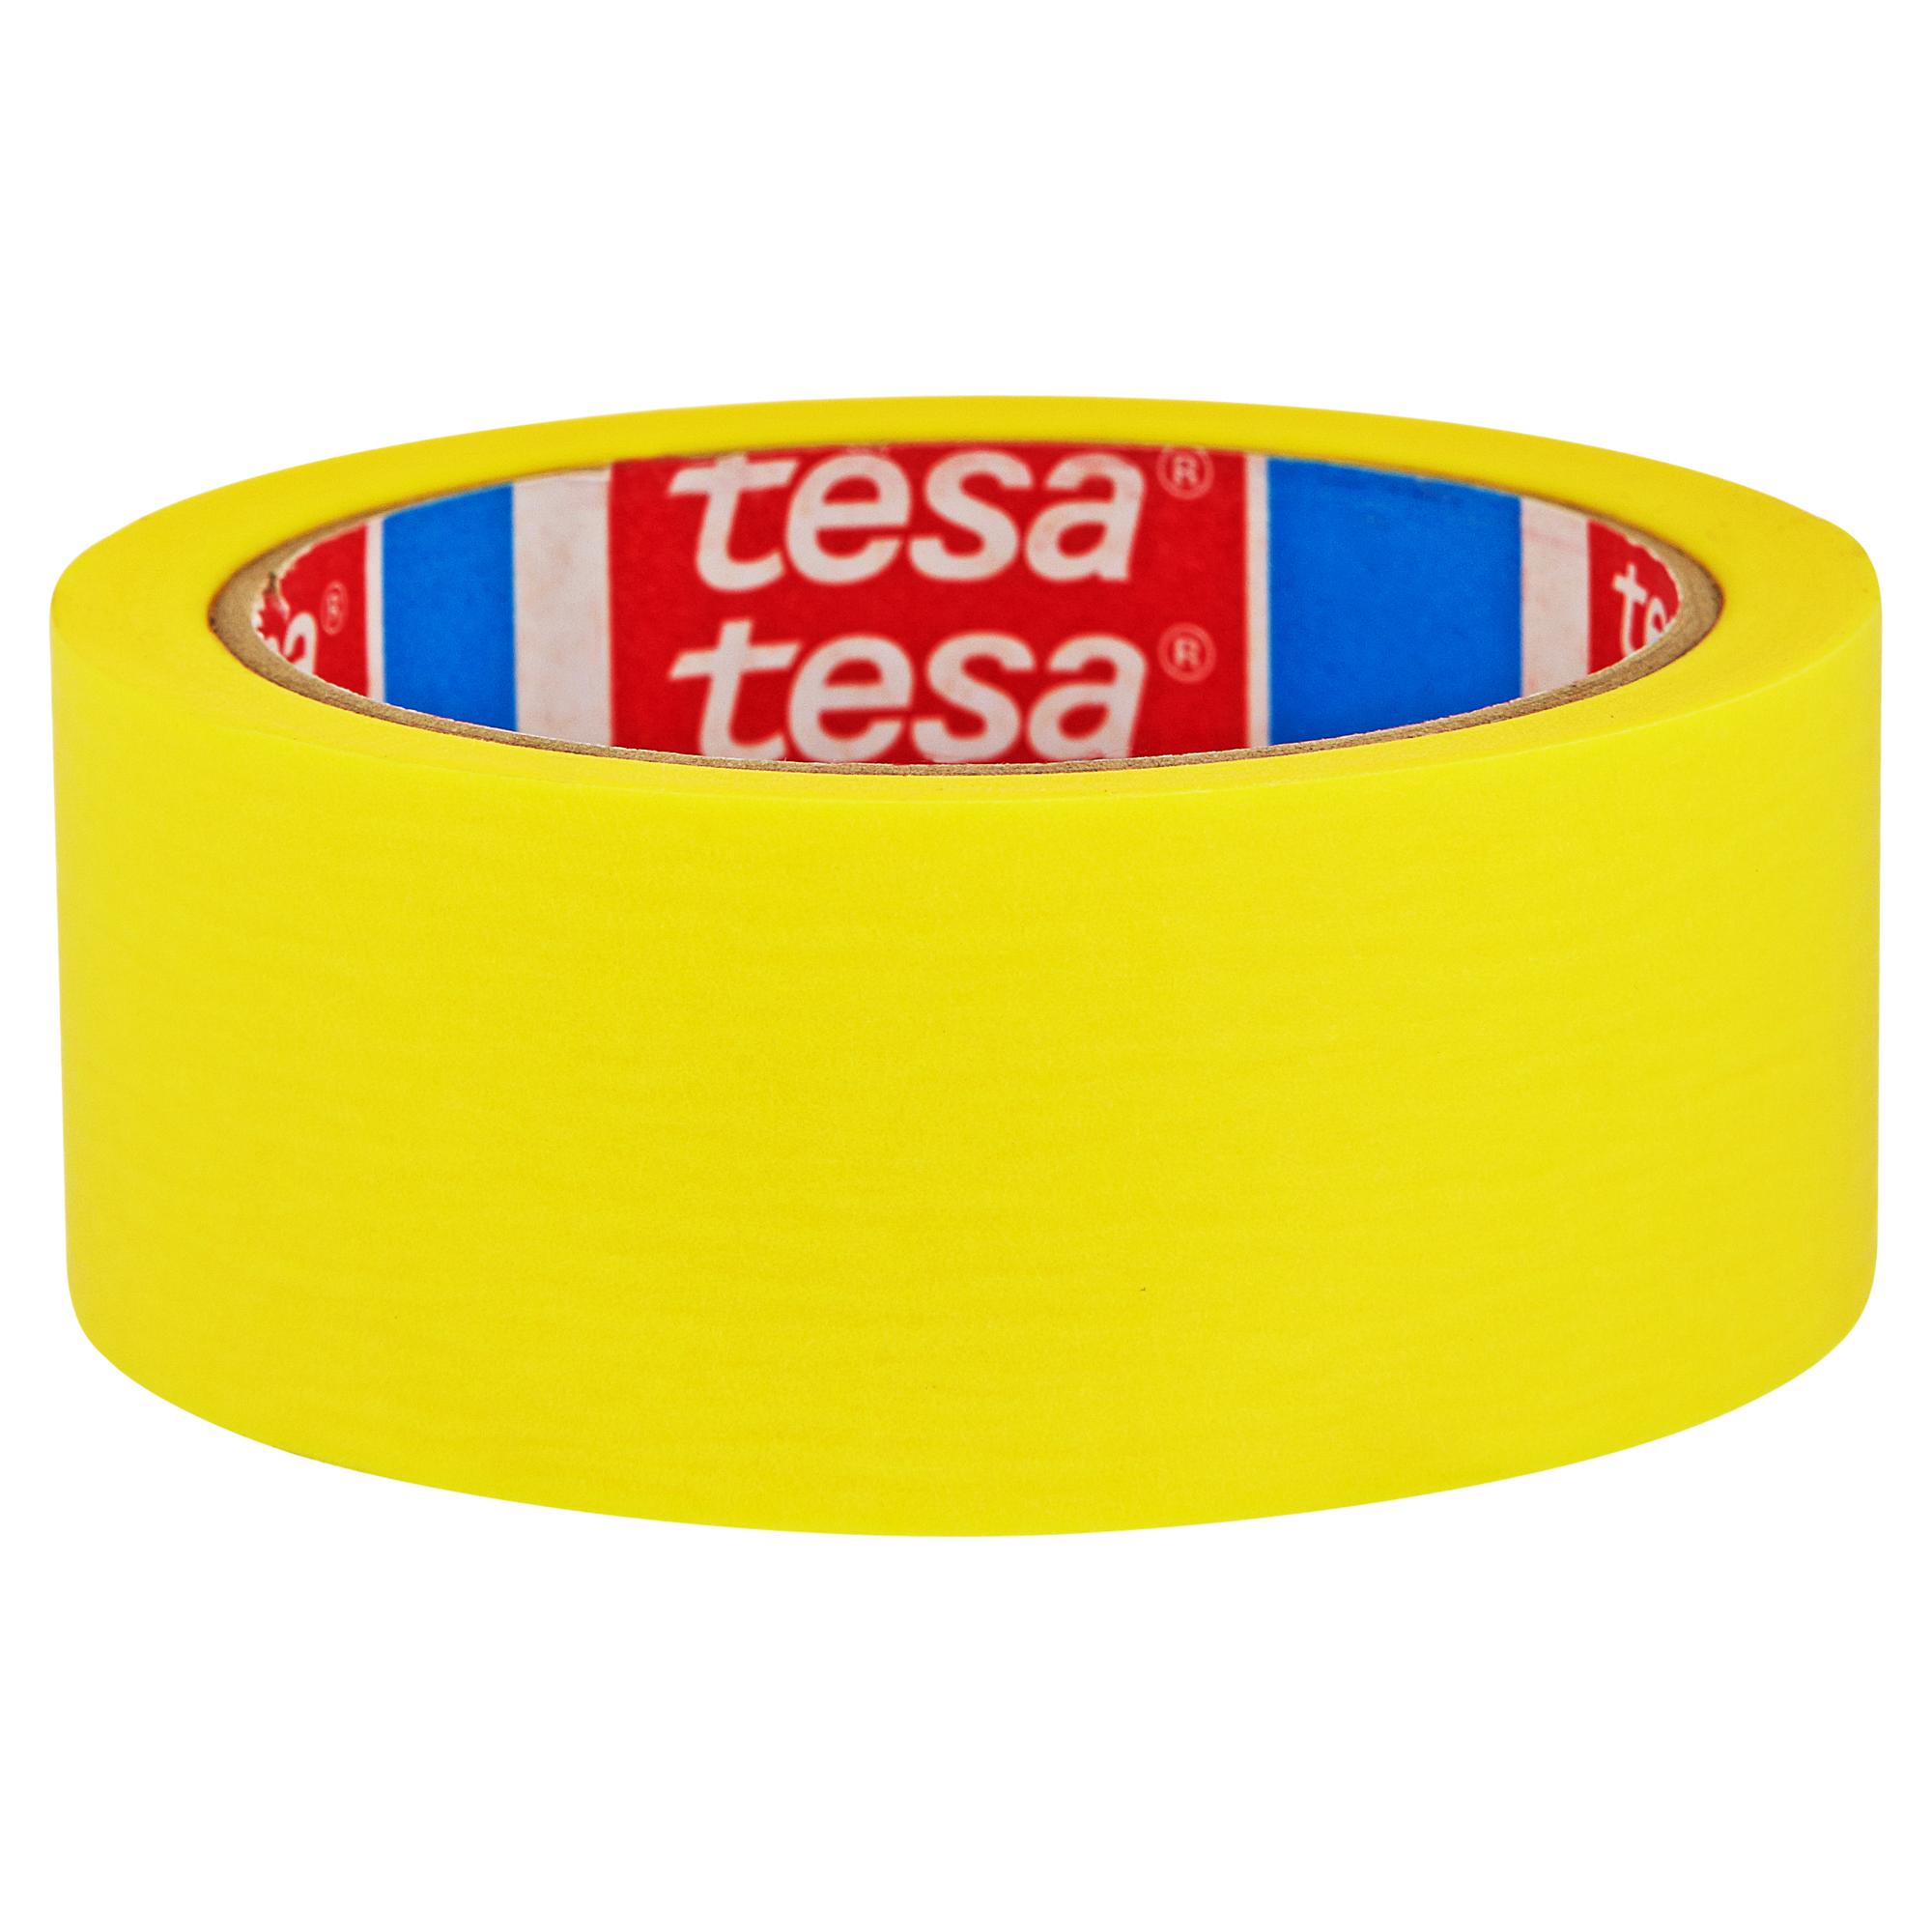 Tesa Profimalerband für innen 2500 x 3,8 cm + product picture